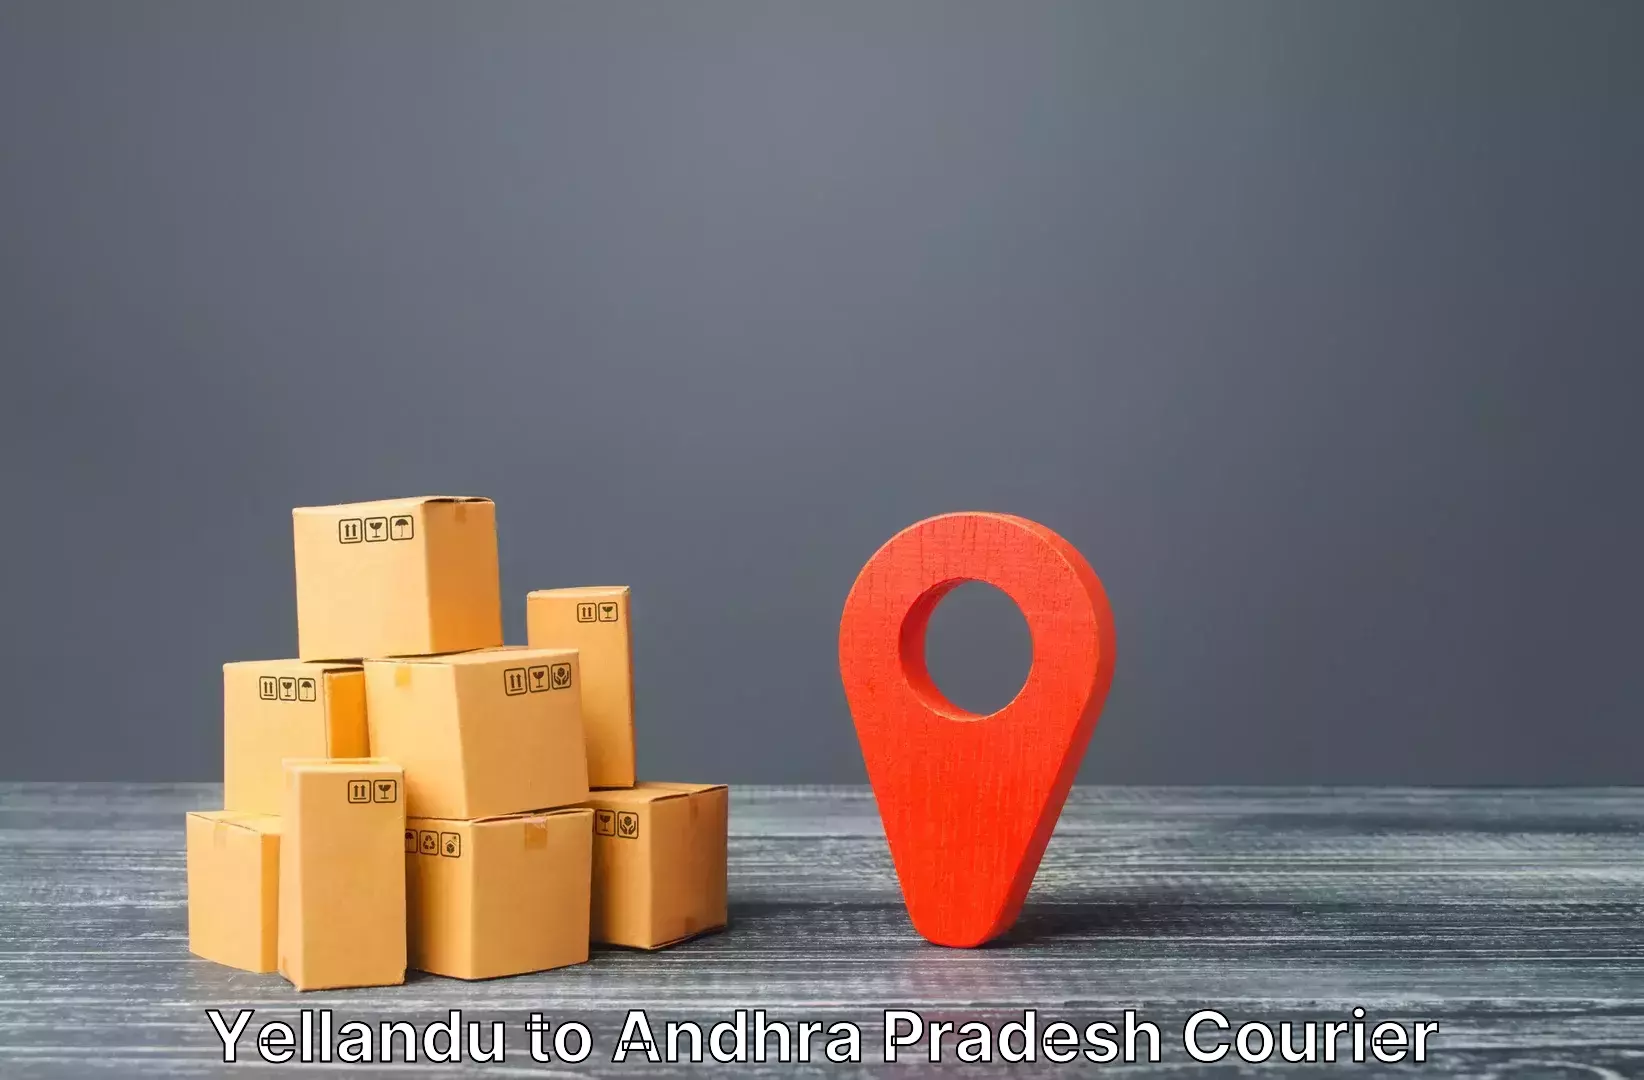 Luggage transport schedule Yellandu to Andhra Pradesh